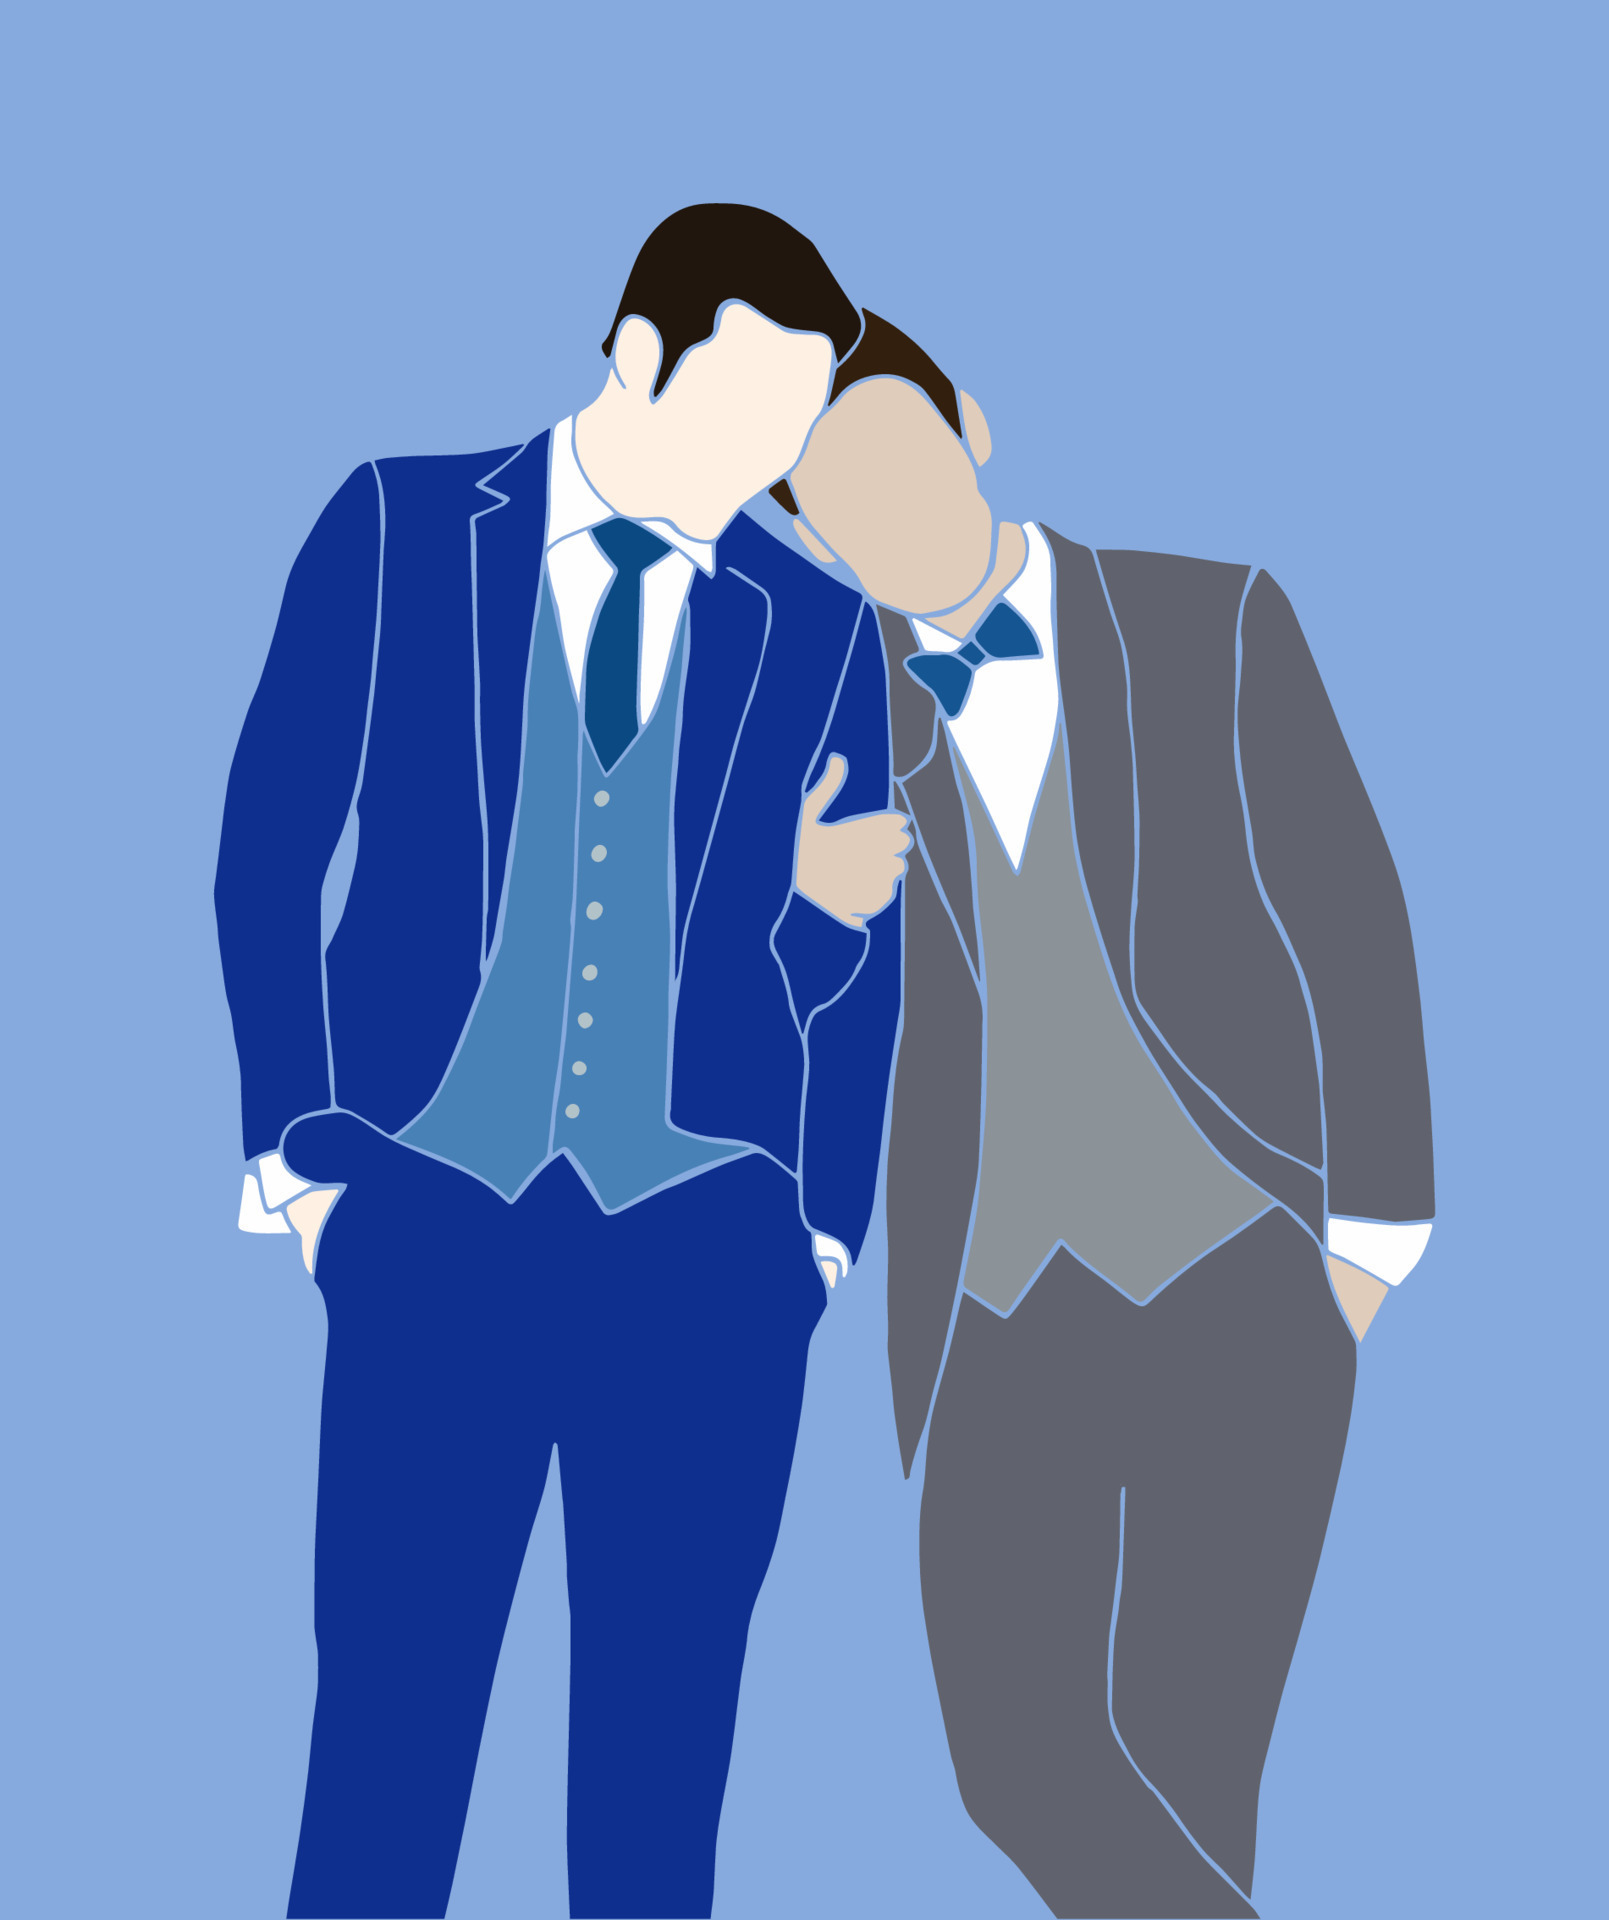 Template LGBT sobre relacionamento/ casais. Template para usar no